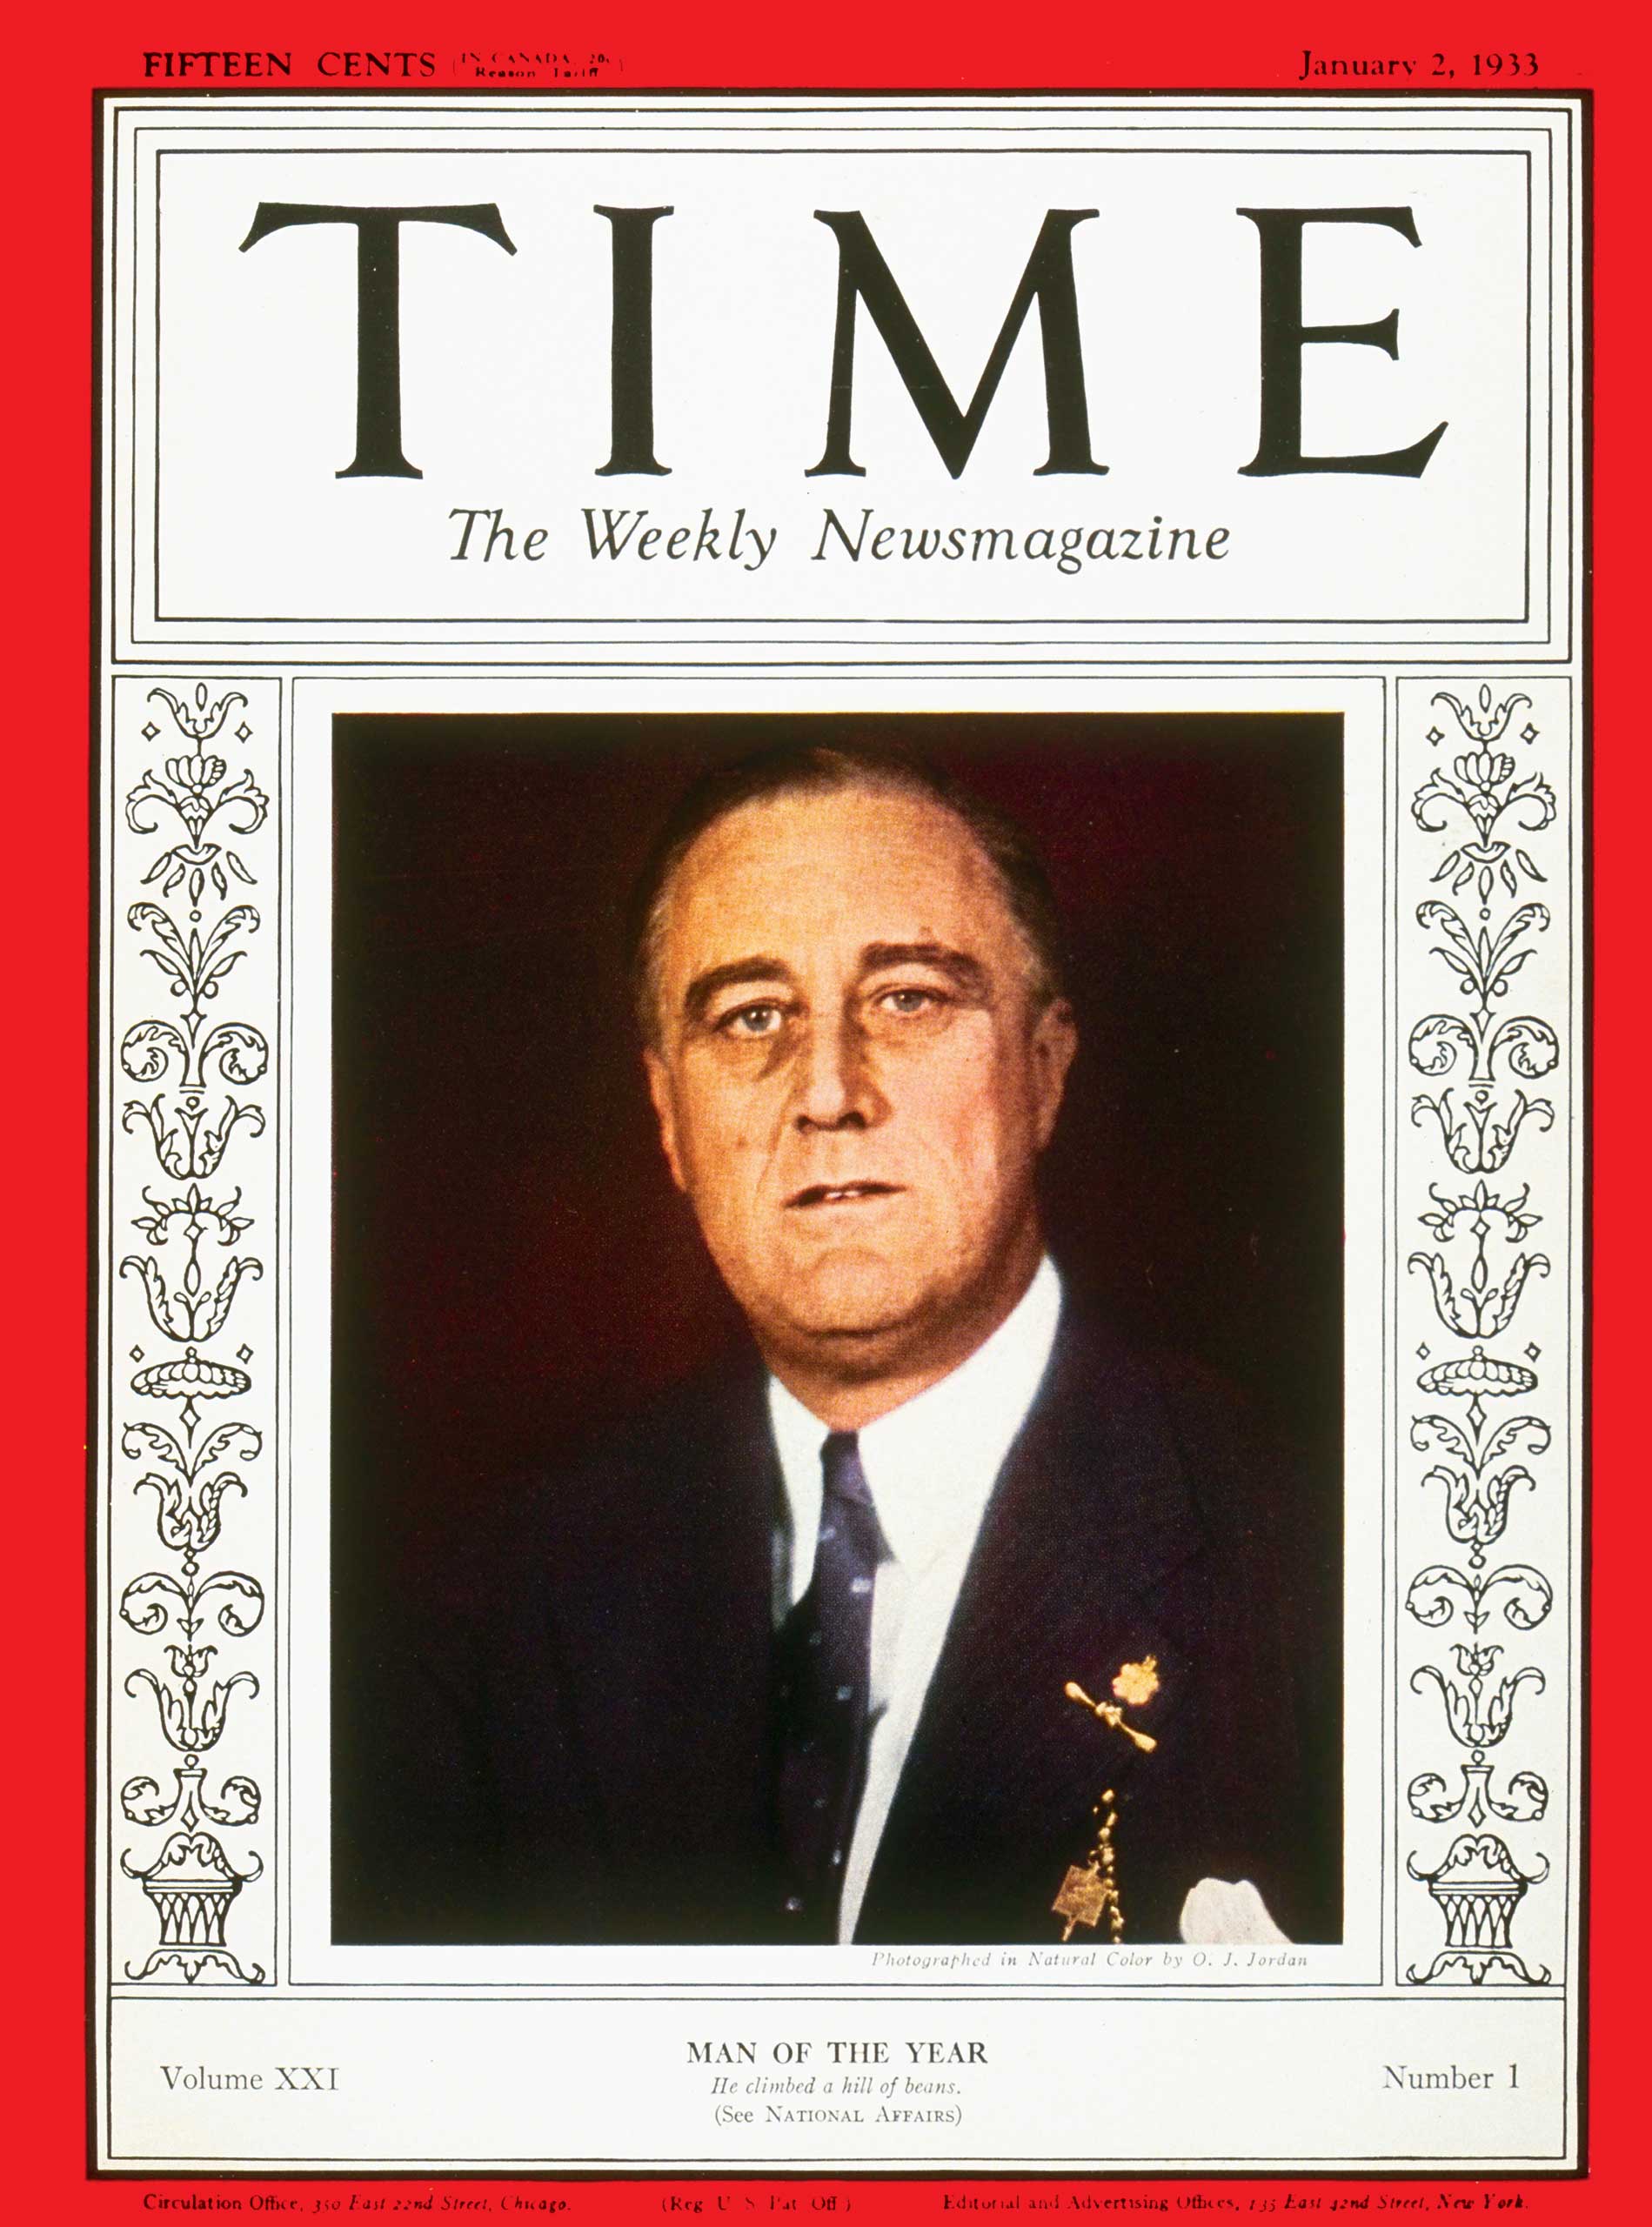 1932: Franklin D. Roosevelt